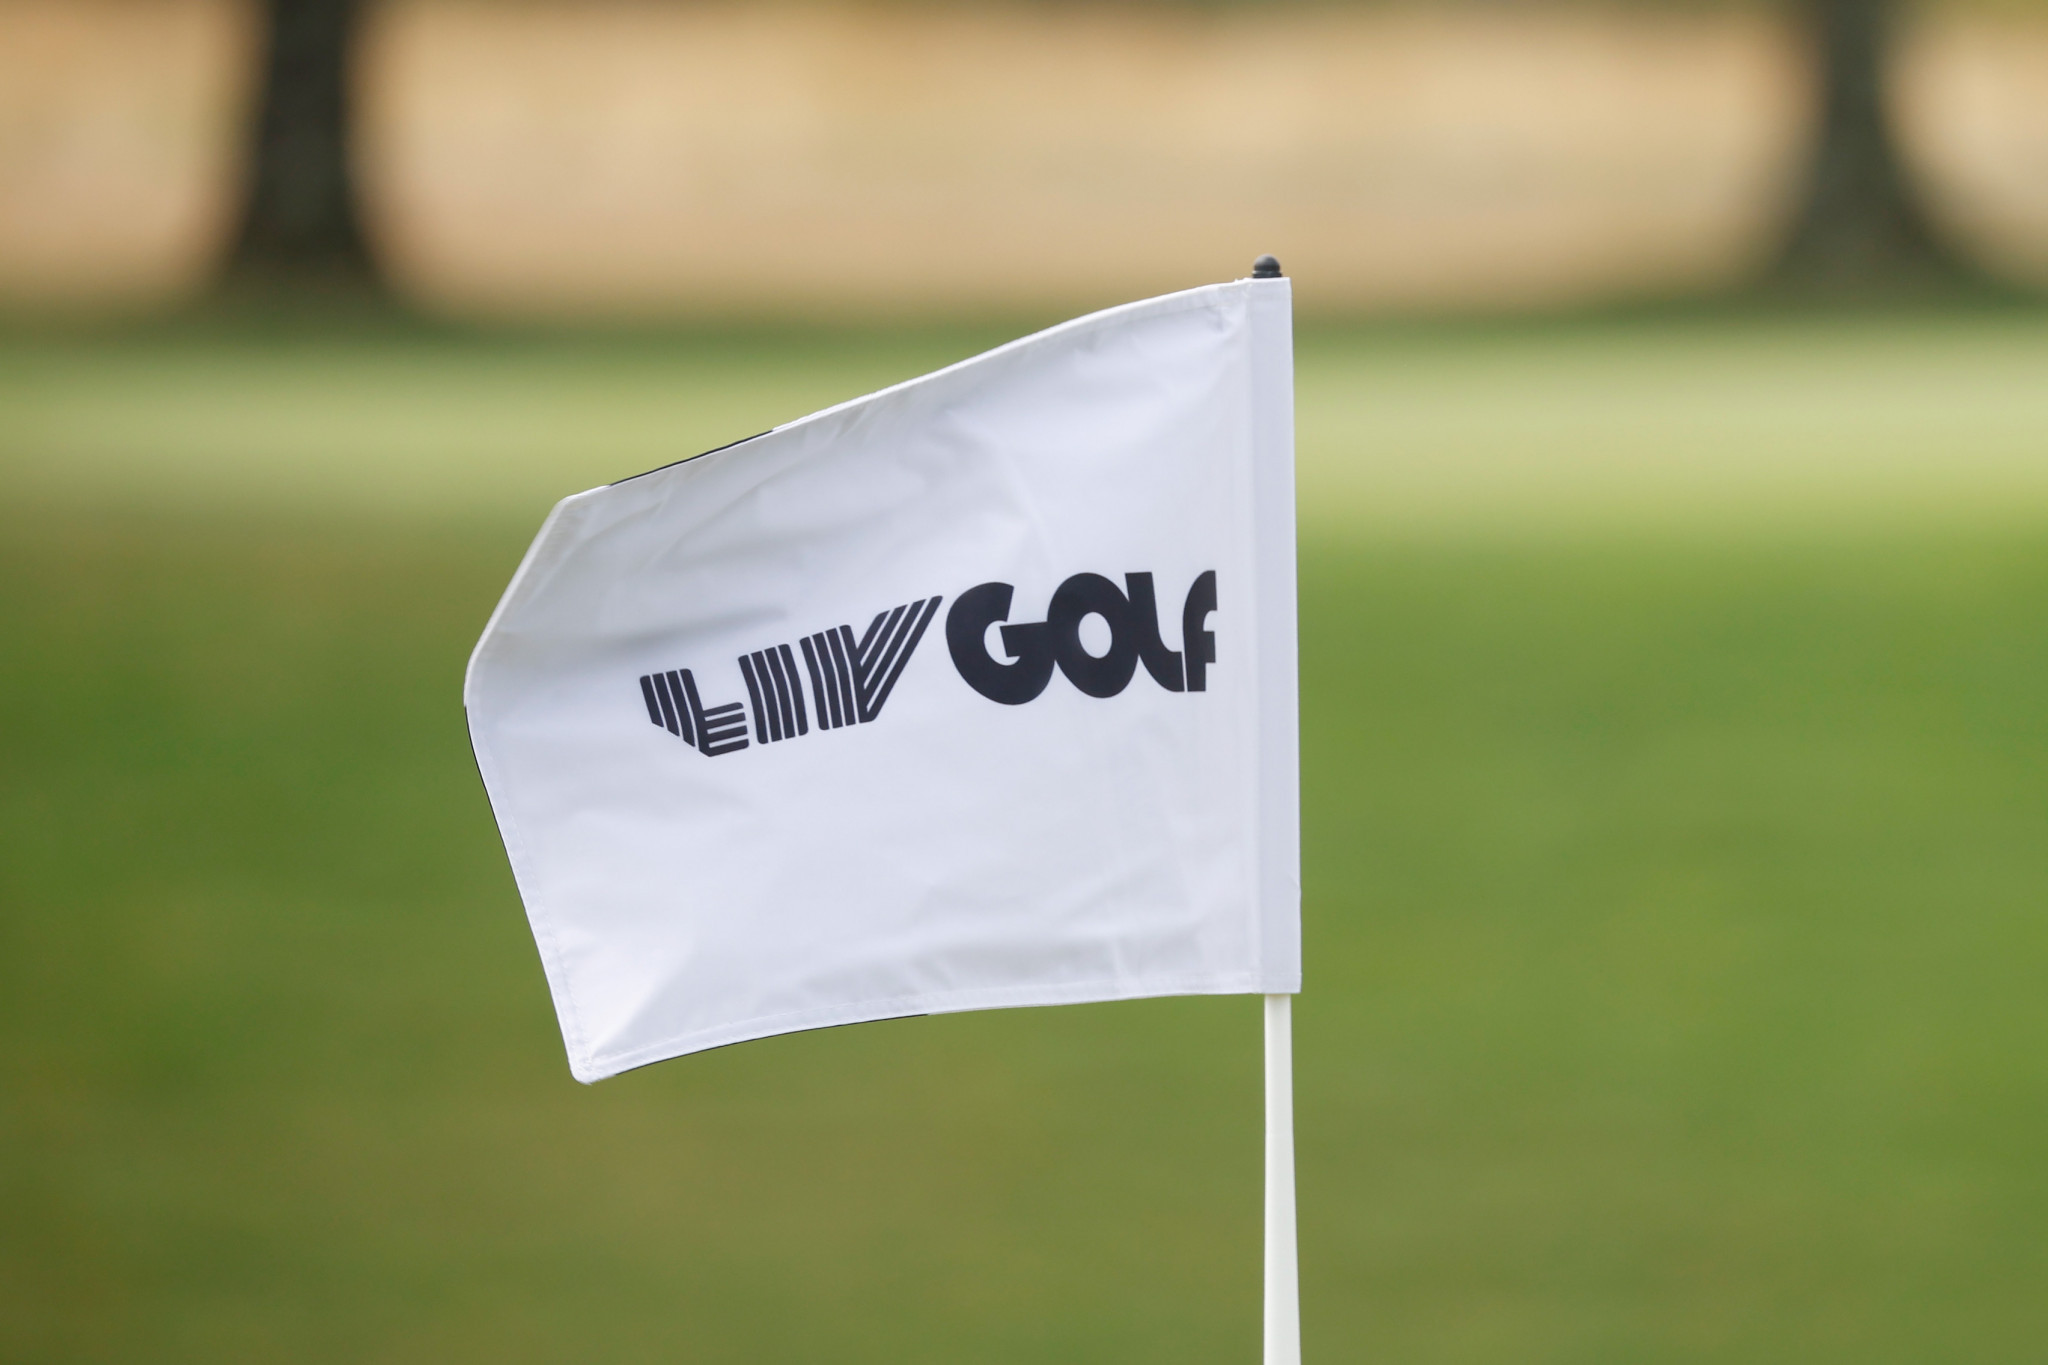 The Swedish Golf Federation said LIV Golf is 